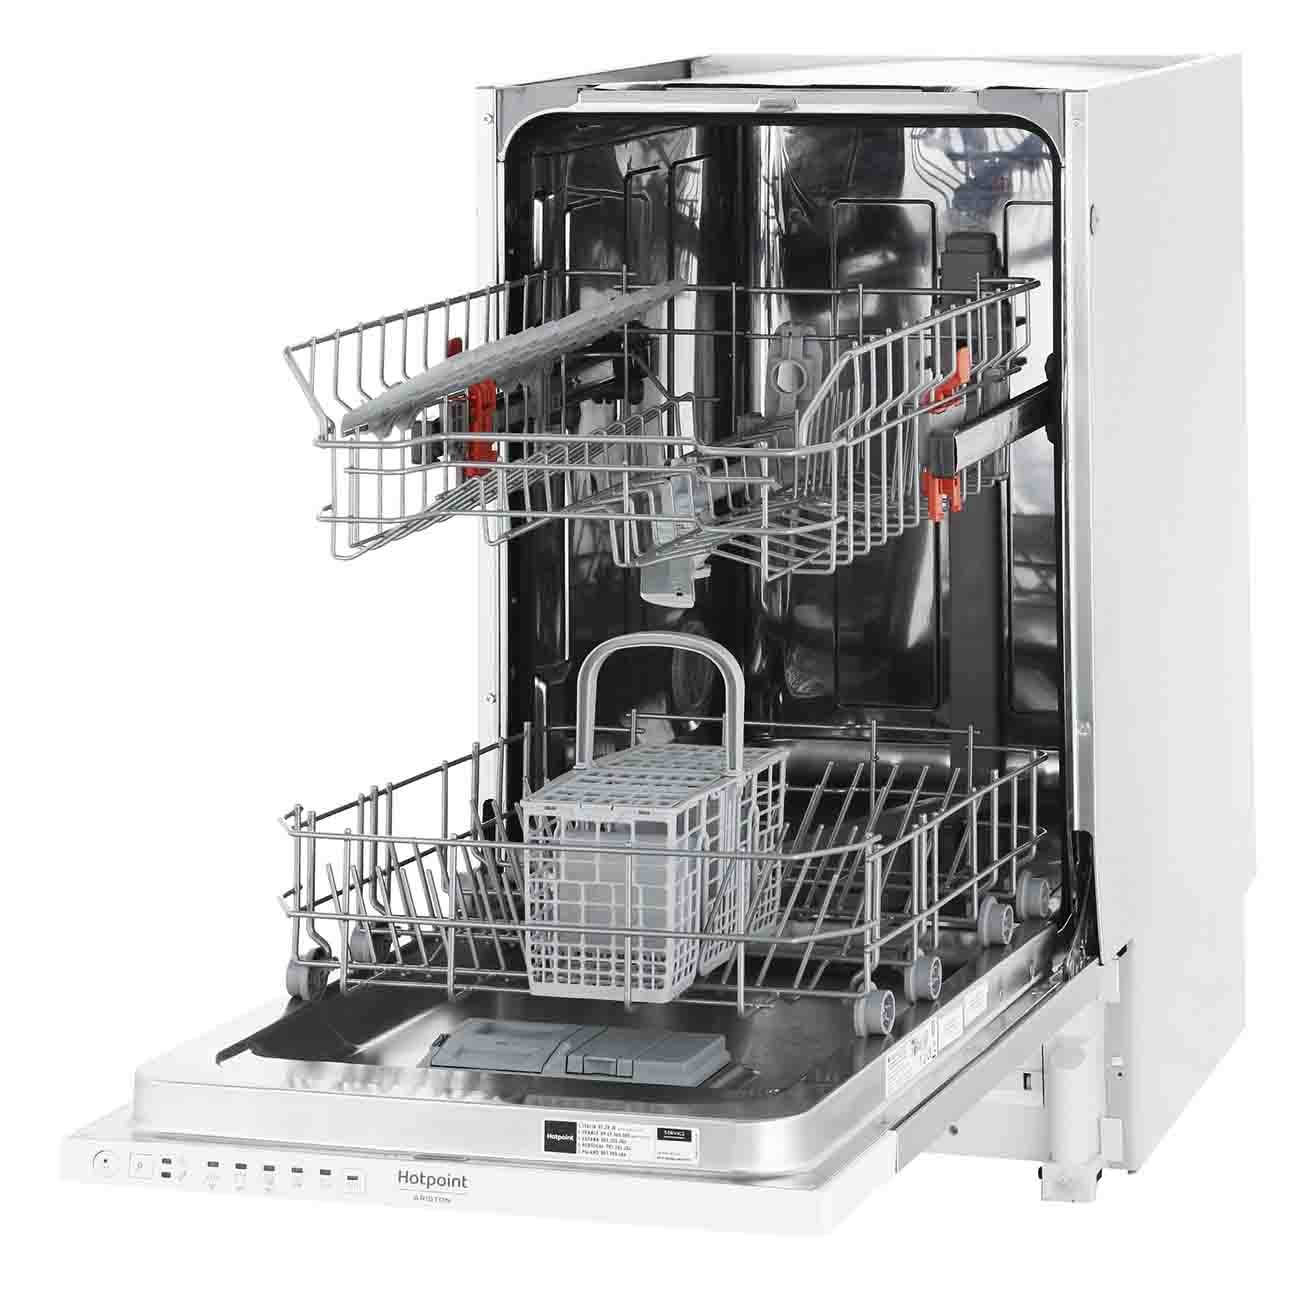 Встраиваемая посудомоечная машина Hotpoint-Ariston HSIE 2B19